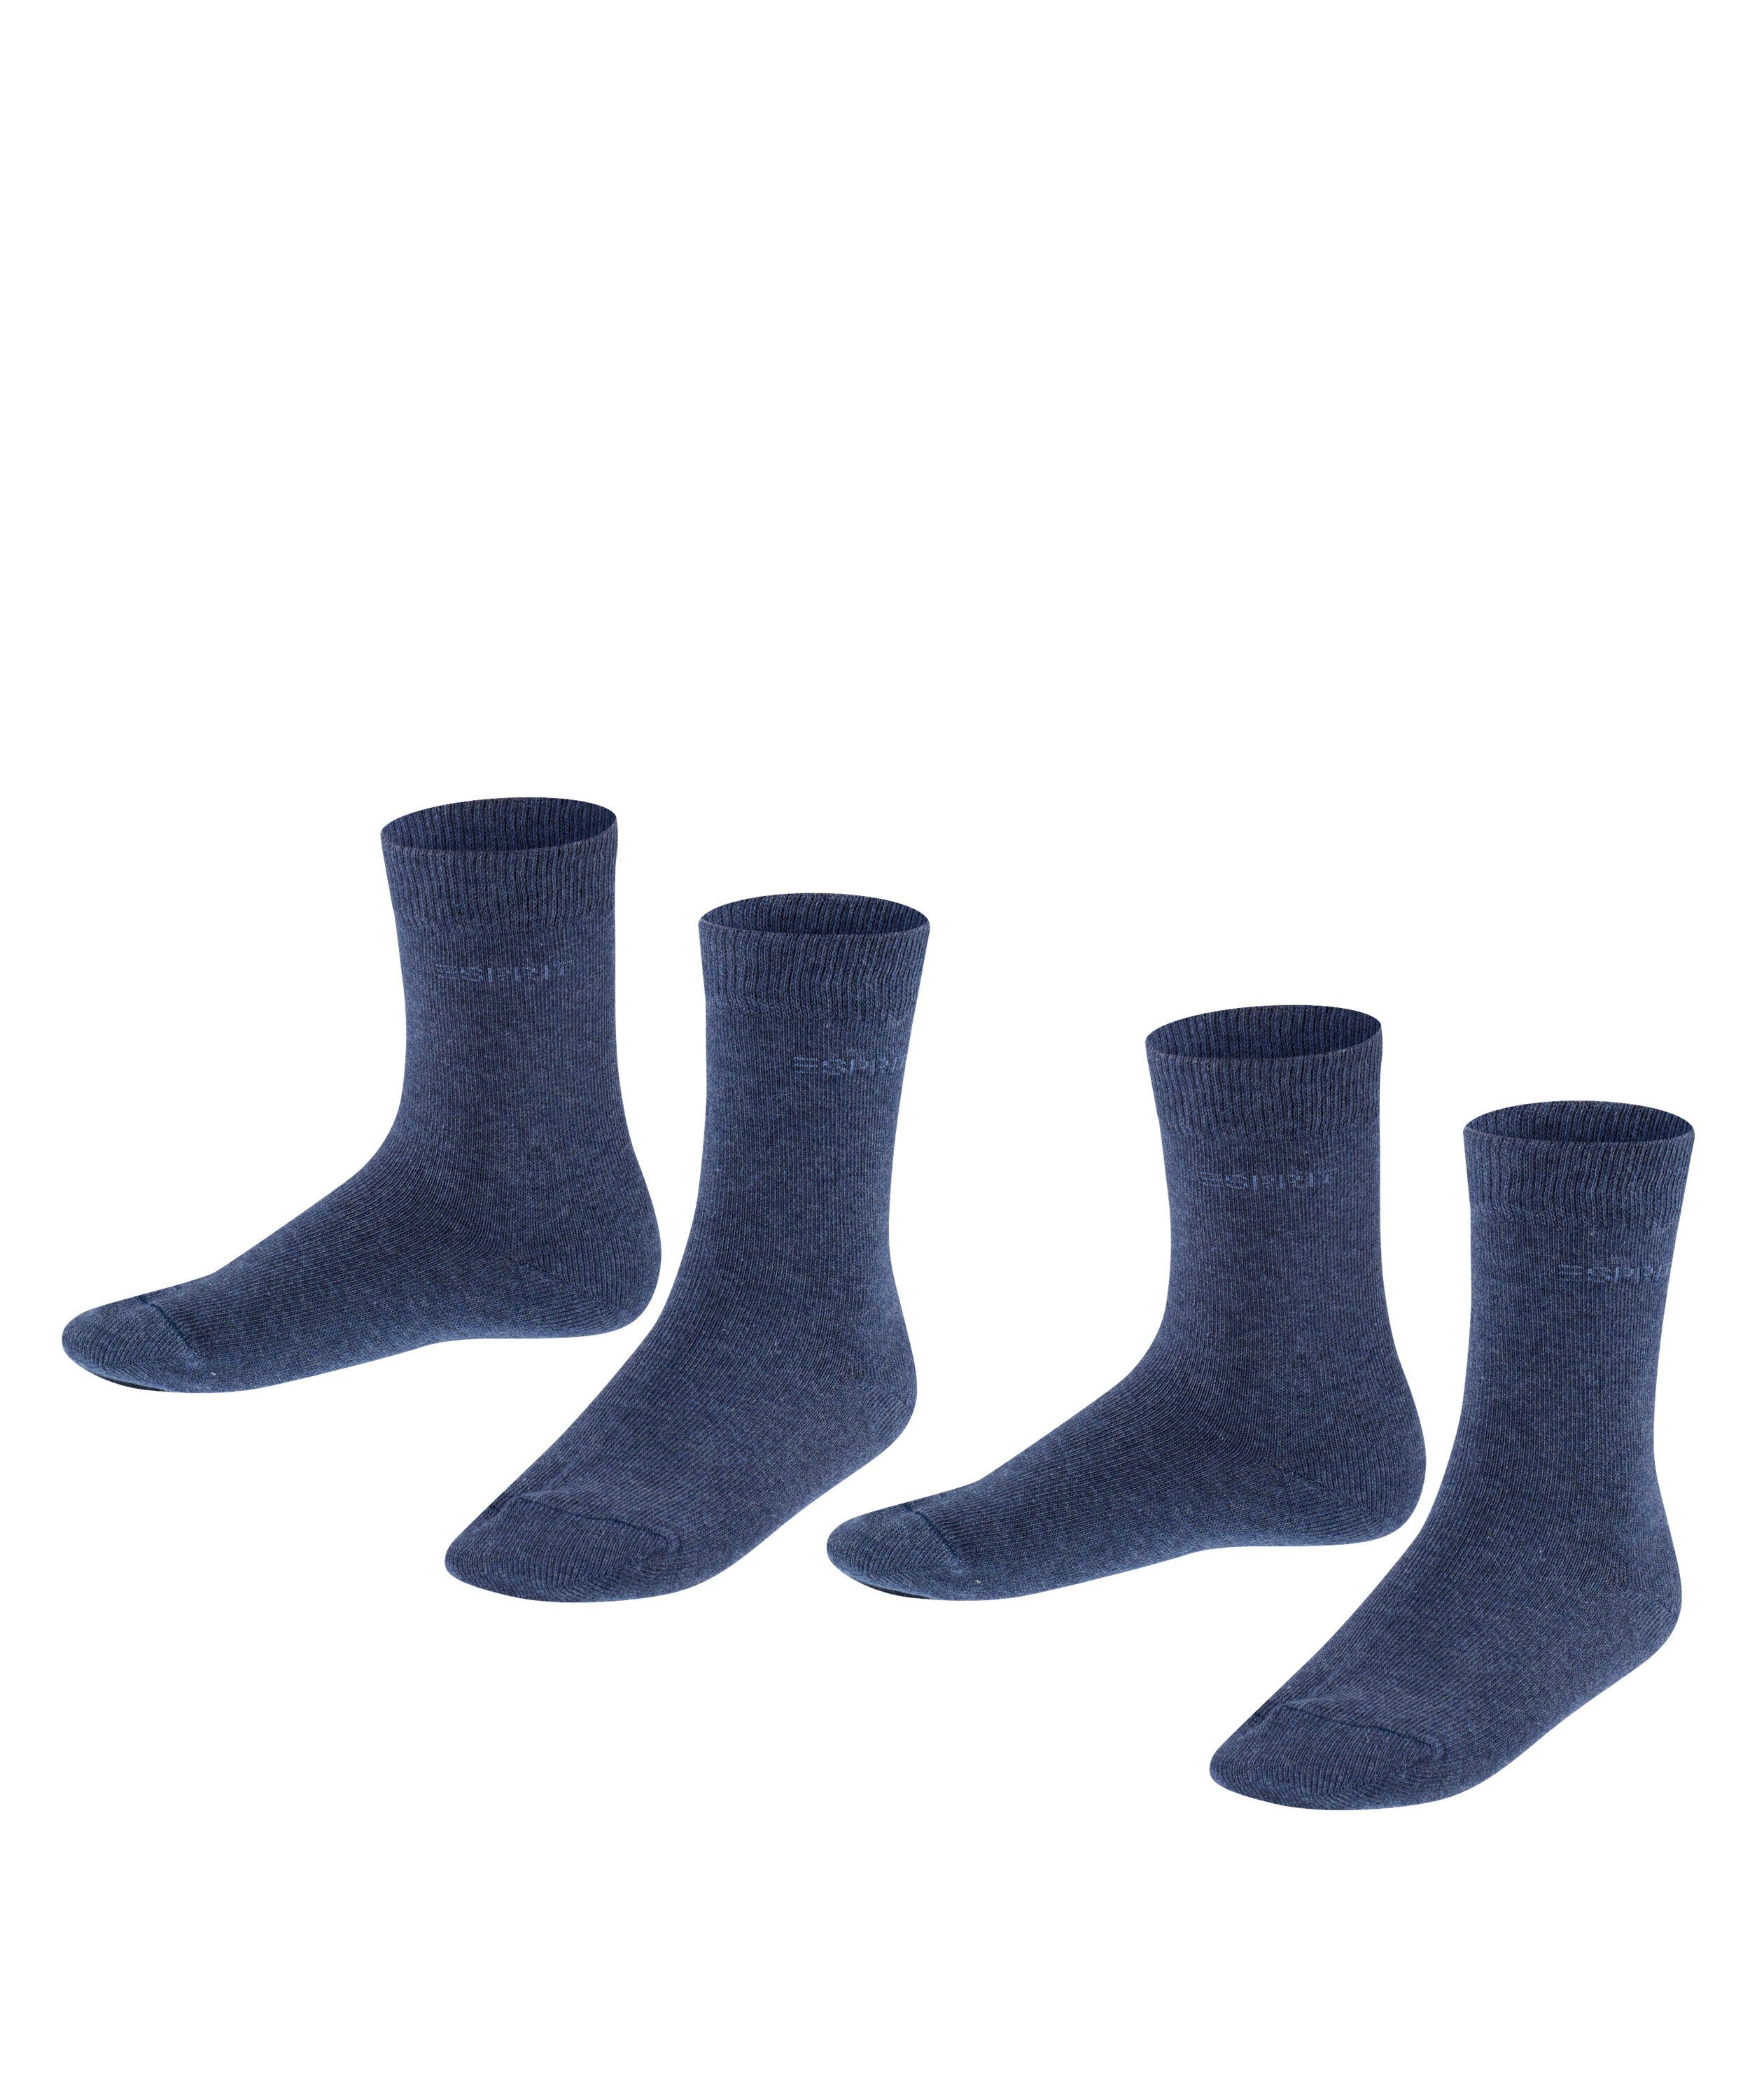 Esprit Socken Foot Logo 2-Pack (6490) navyblue (2-Paar) m